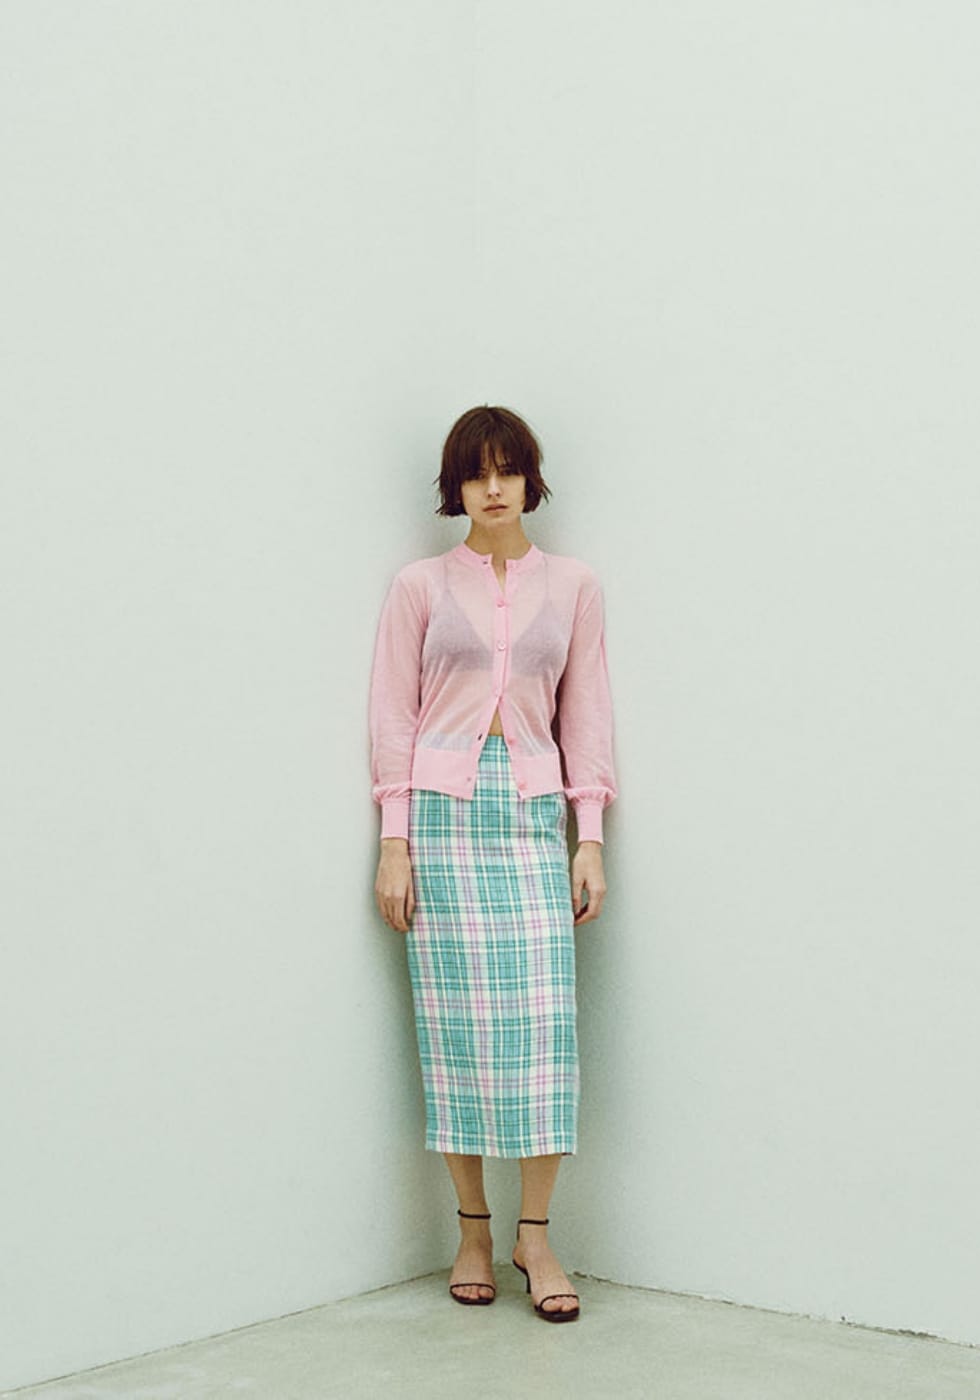 シアーニット カーディガン、ペンシル スカートを着用した女性の写真-1